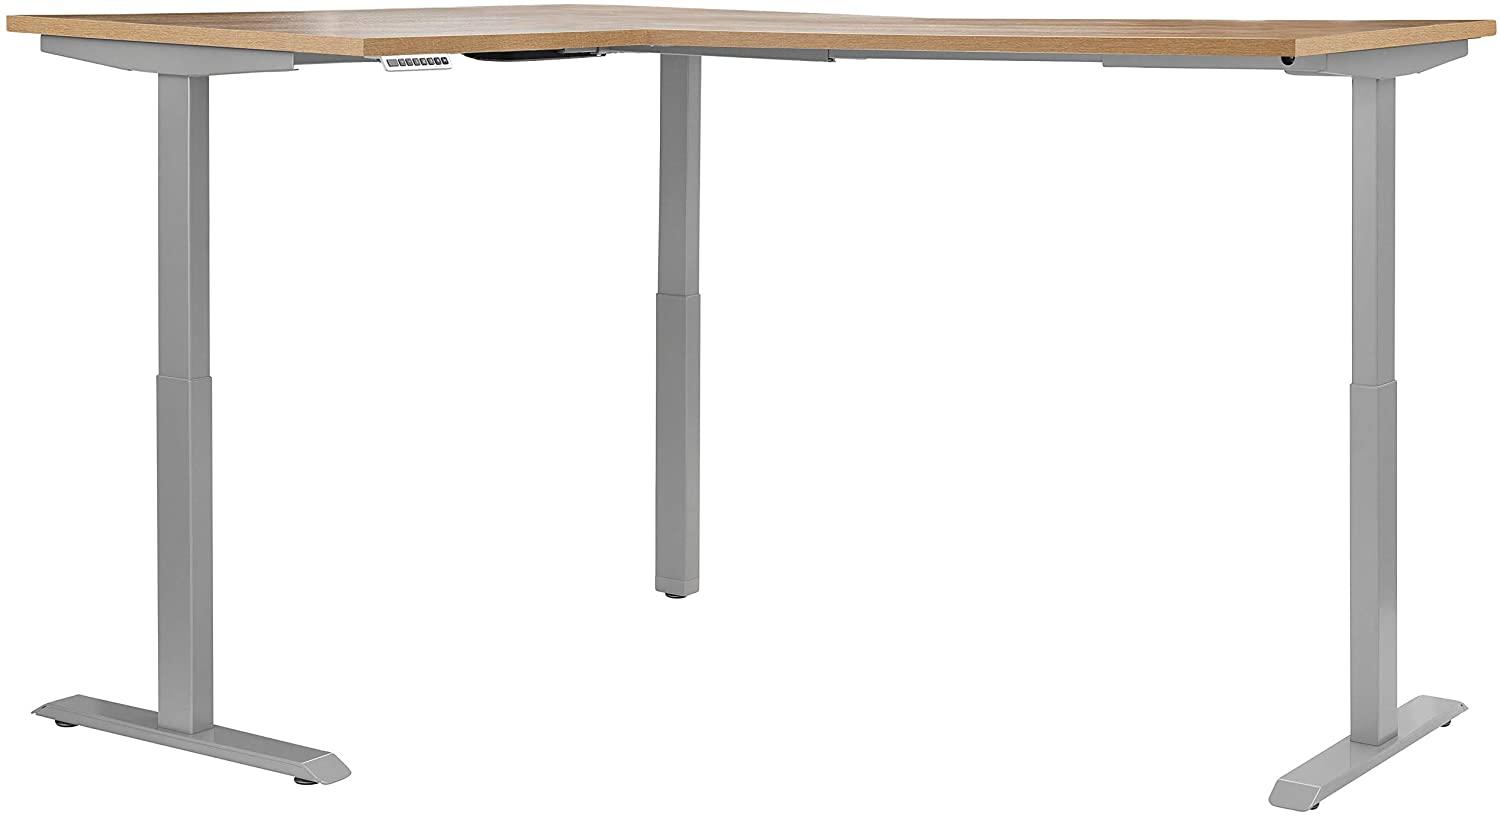 Schreibtisch "5514" aus Metall / Spanplatte in Metall platingrau - Riviera Eiche. Abmessungen (BxHxT) 200x120x150 cm Bild 1